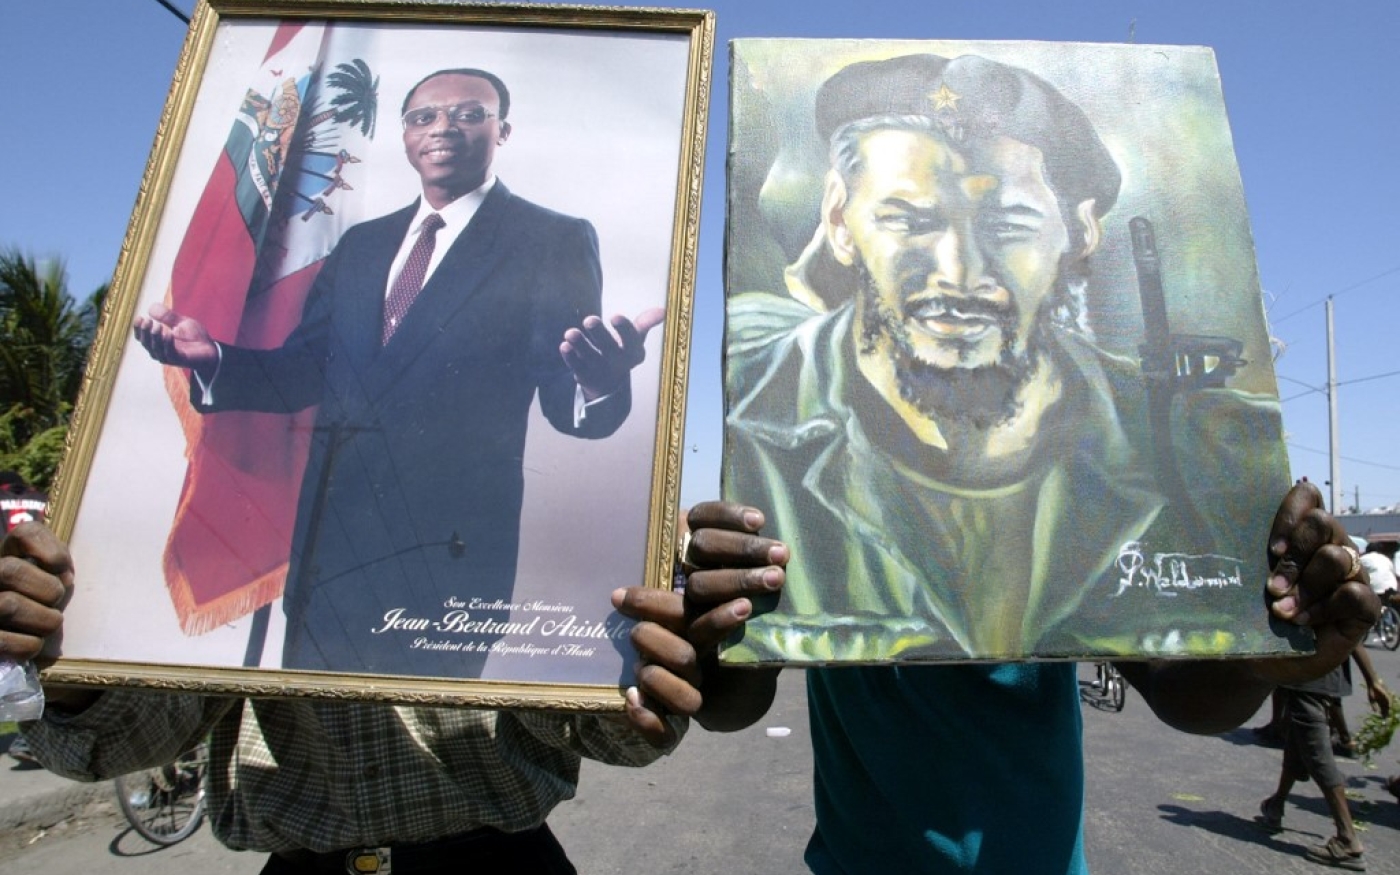 Deux partisans pro-Jean-Bertrand Aristide lors d’un rassemblement au centre-ville de Port-au-Prince le 5 mars 2004, alors qu’Aristide a fui le pays sous la pression d’un mouvement rebelle armé et de la communauté internationale. (AFP/Yuri Cortez)